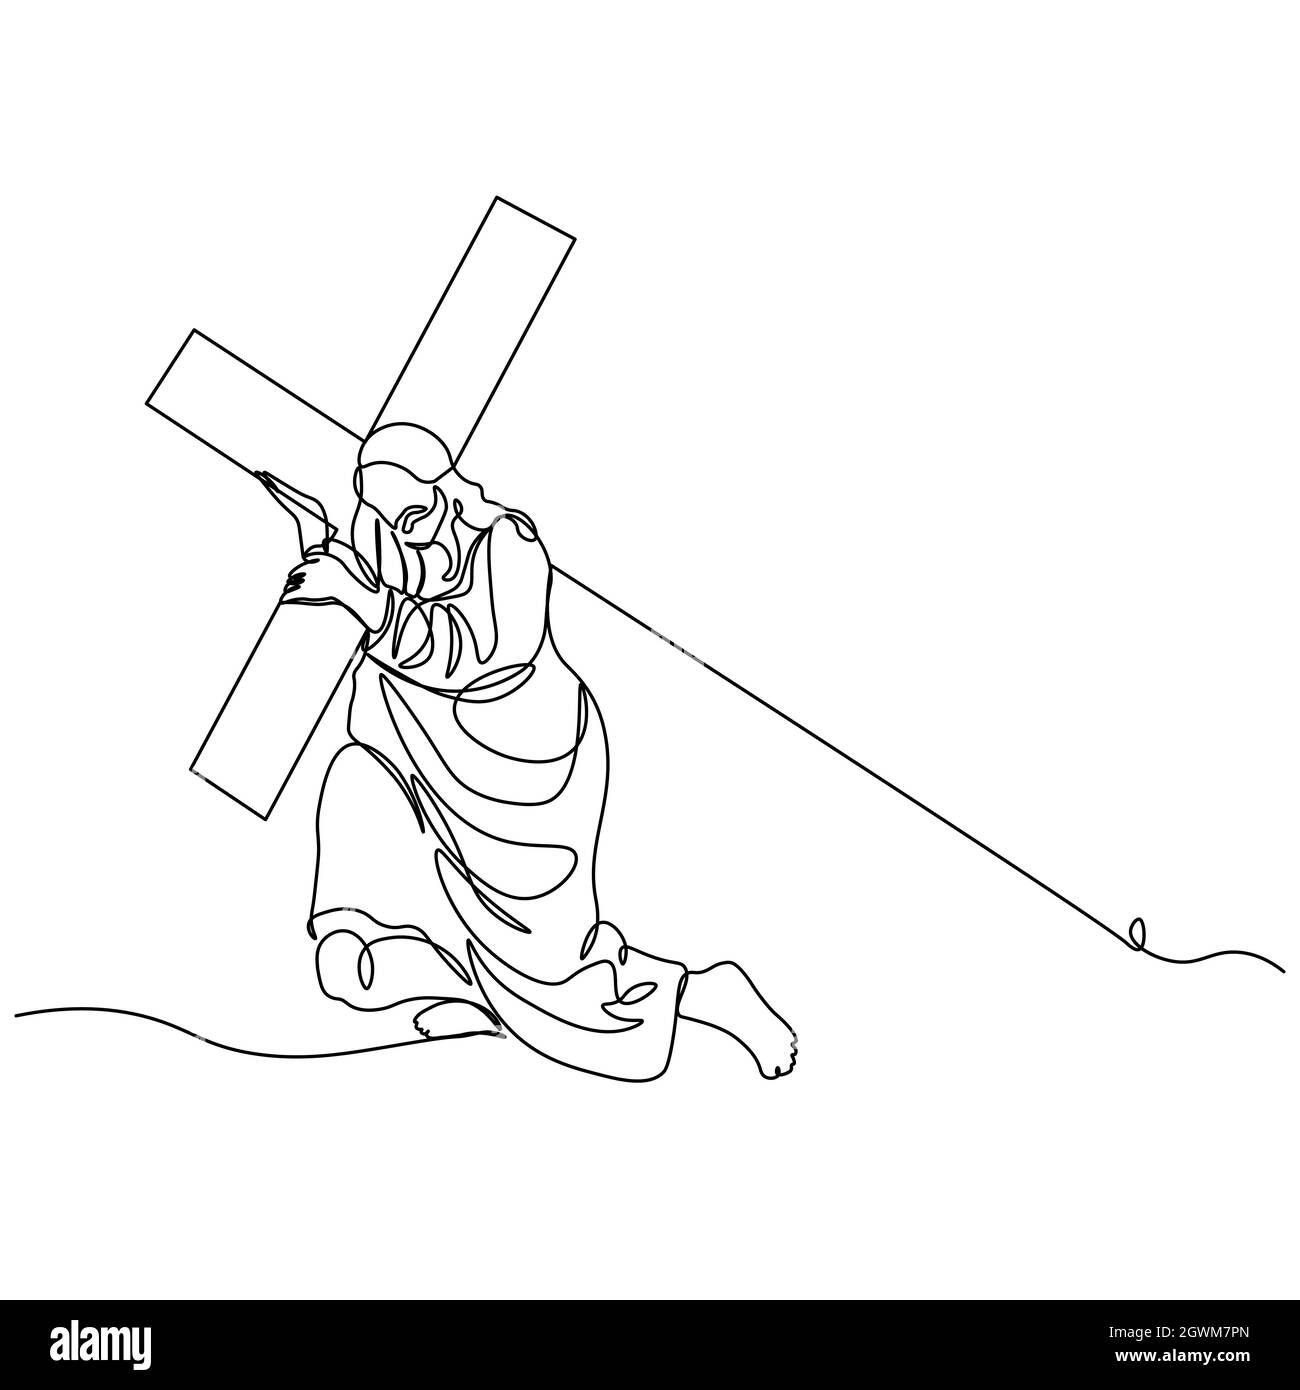 Une seule ligne continue art doodle spiritualité croix, crucifixion Jésus Christ .image isolée d'un contour dessiné à la main sur un fond blanc Illustration de Vecteur